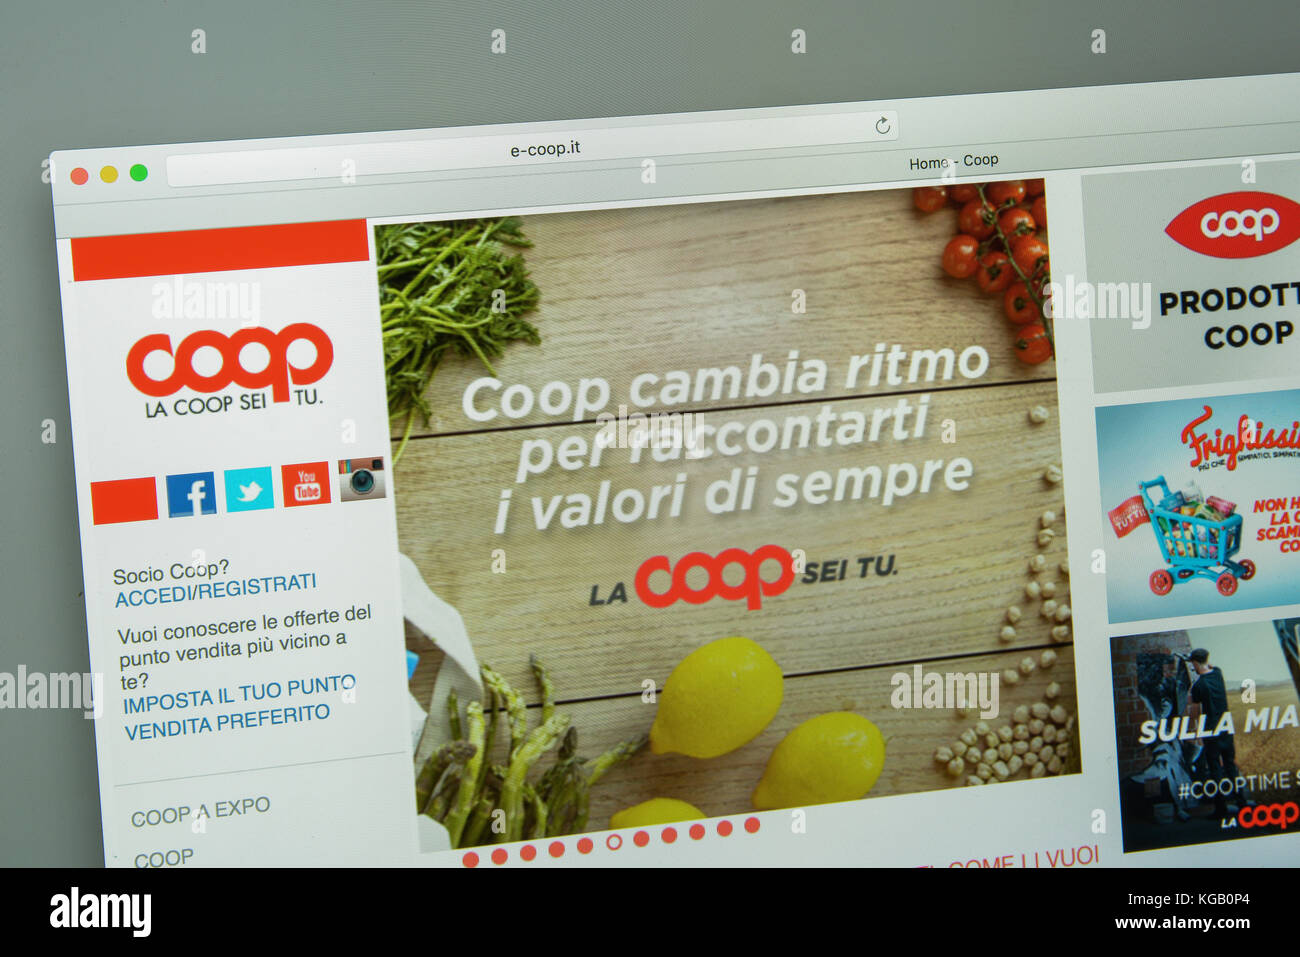 Milano, Italia - 10 agosto 2017: coop website homepage. è un italiano della catena di ipermercati coop.it logo visibile. Foto Stock